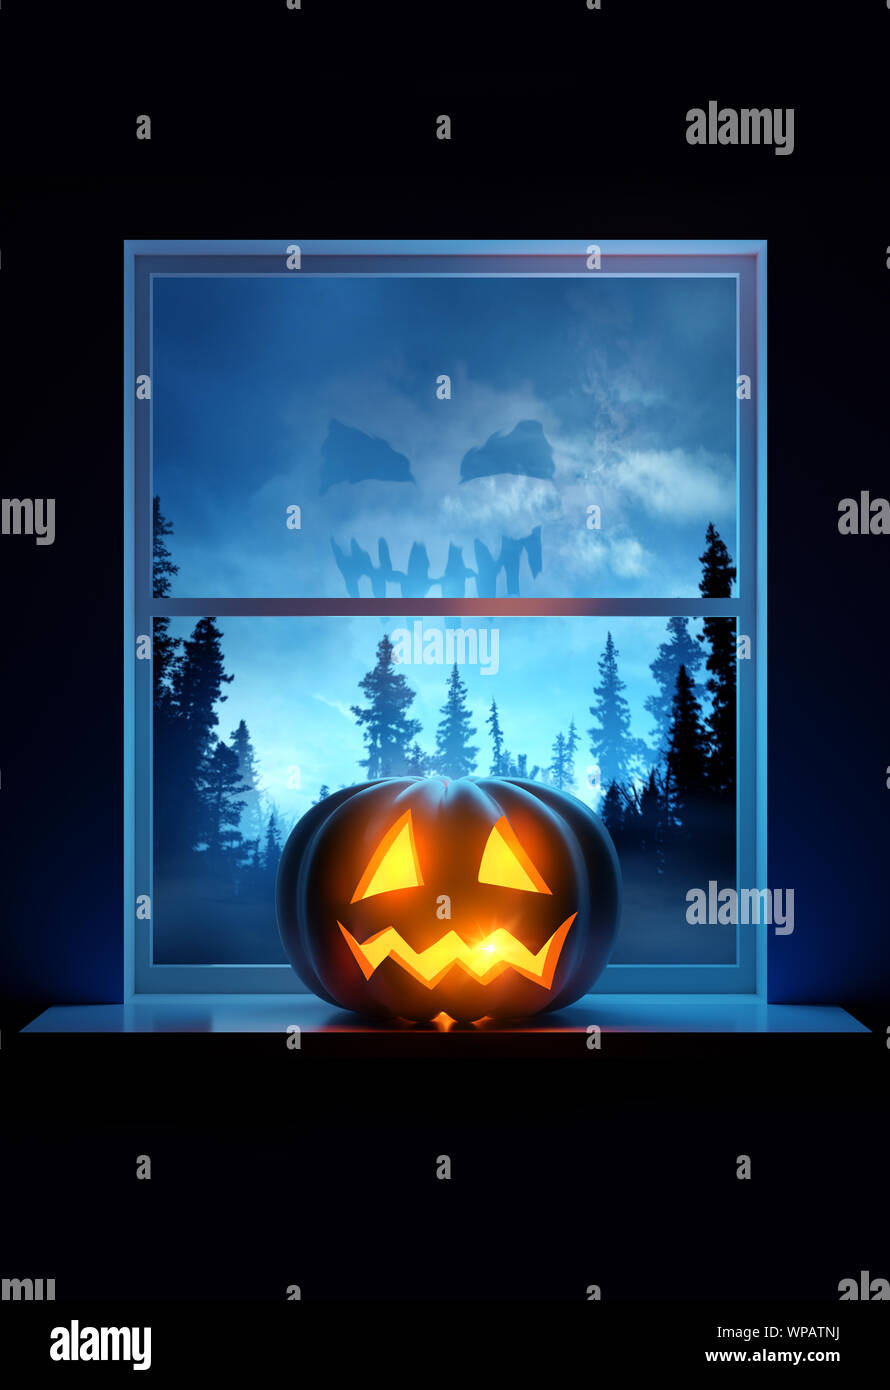 Un rebord de fenêtre d'accueil avec un Jack O Lantern pumpkin sur l'affichage à l'halloween eve. 3D illustration. Banque D'Images